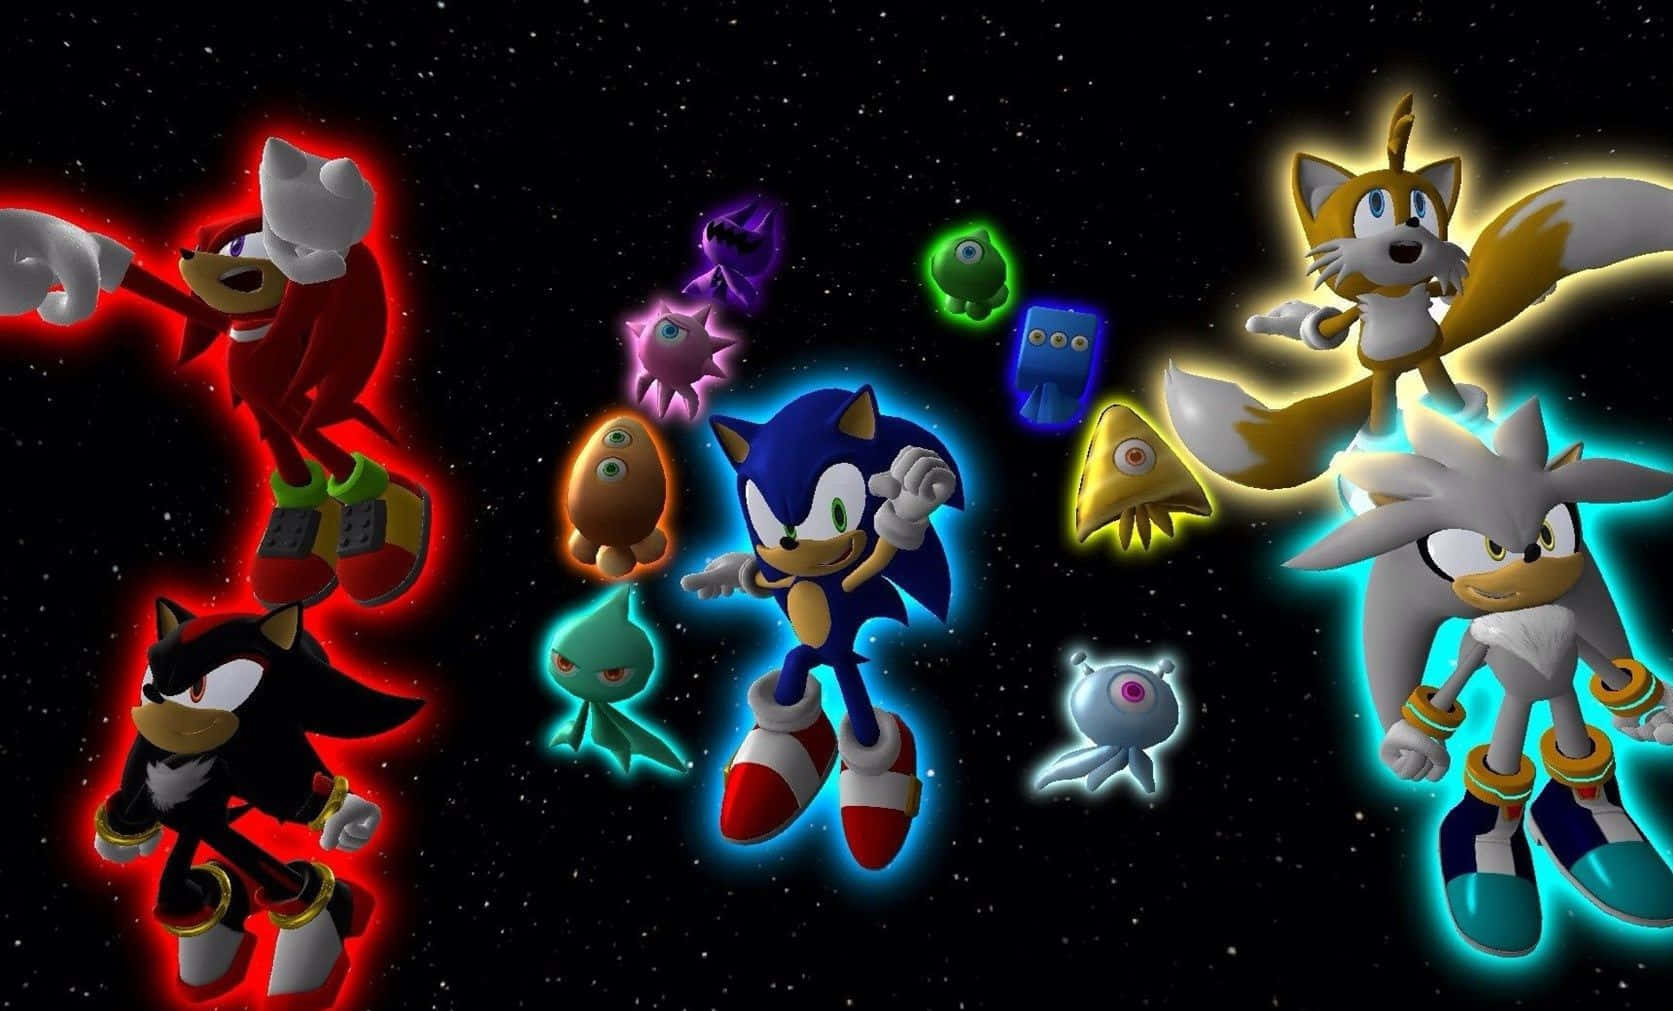 Sonic The Hedgehog vender tilbage i 4K pragt! Wallpaper